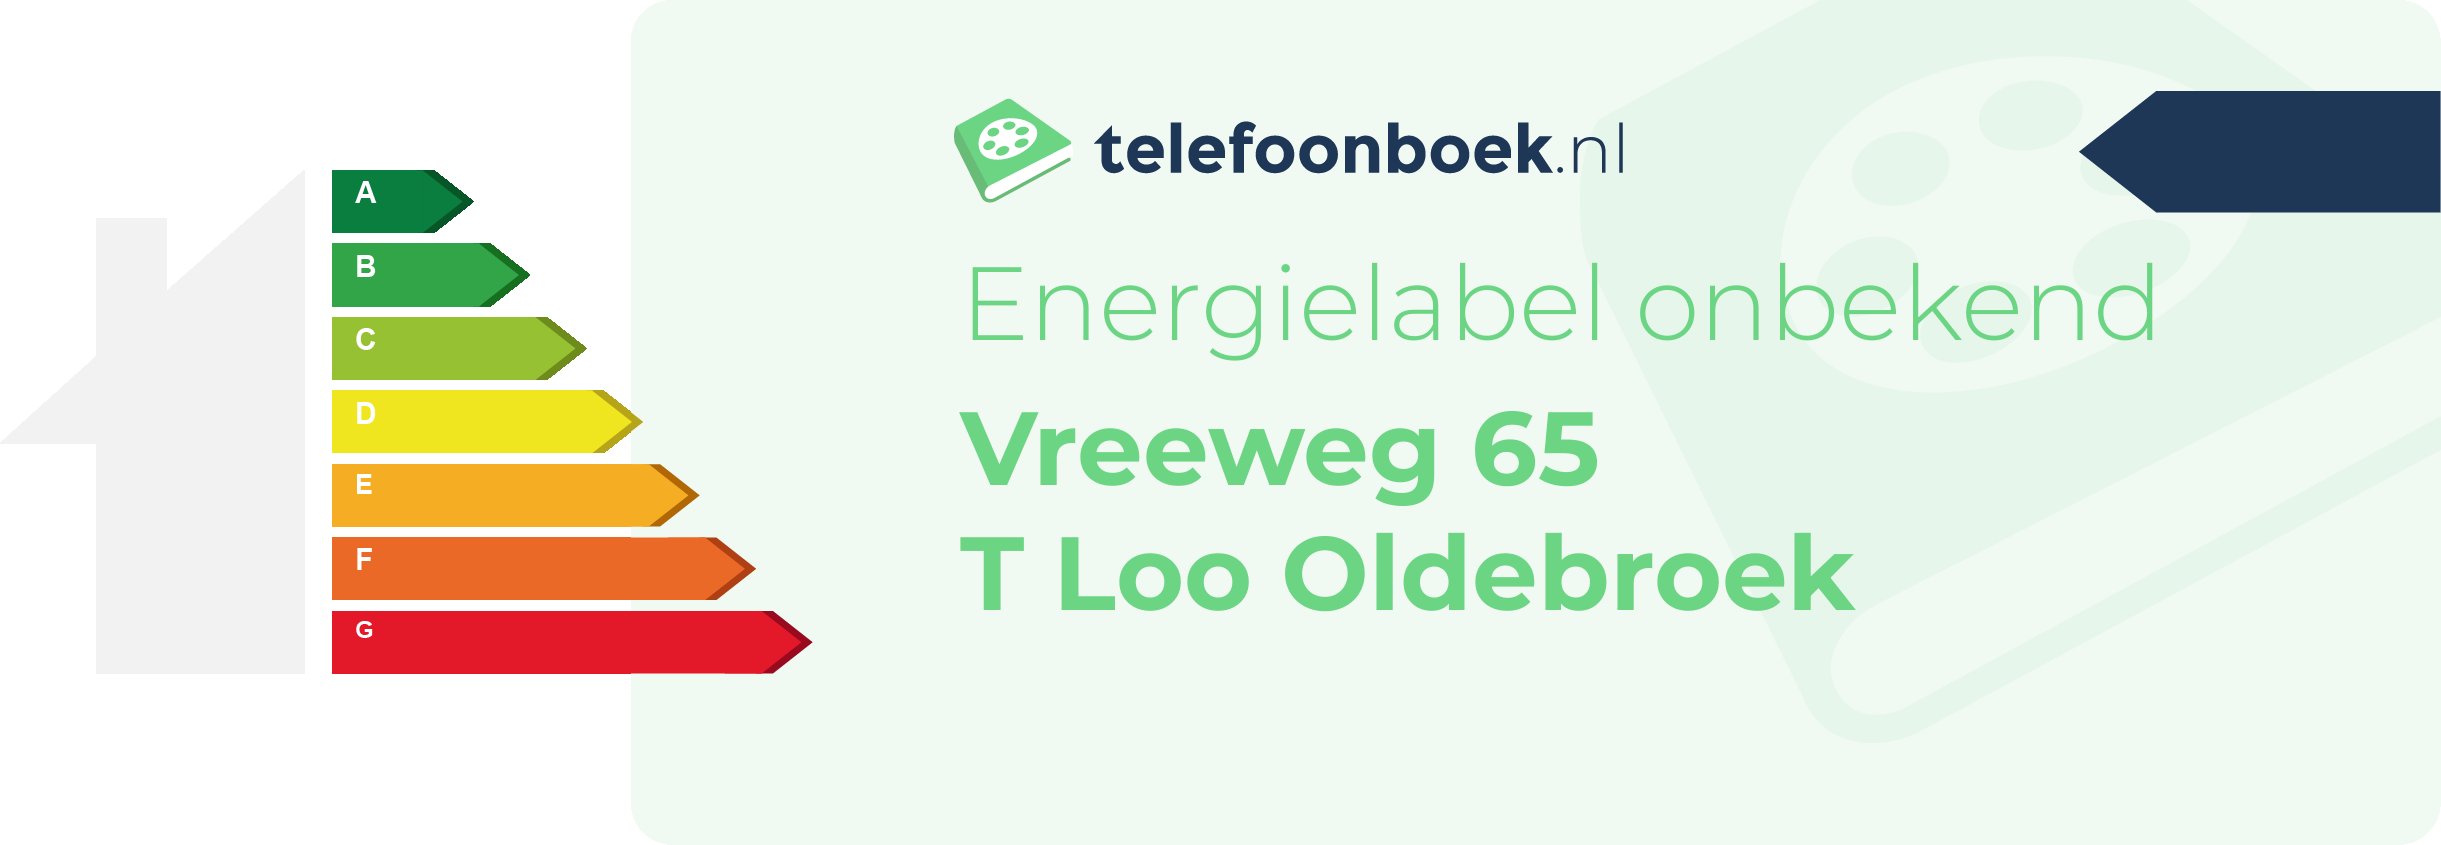 Energielabel Vreeweg 65 T Loo Oldebroek